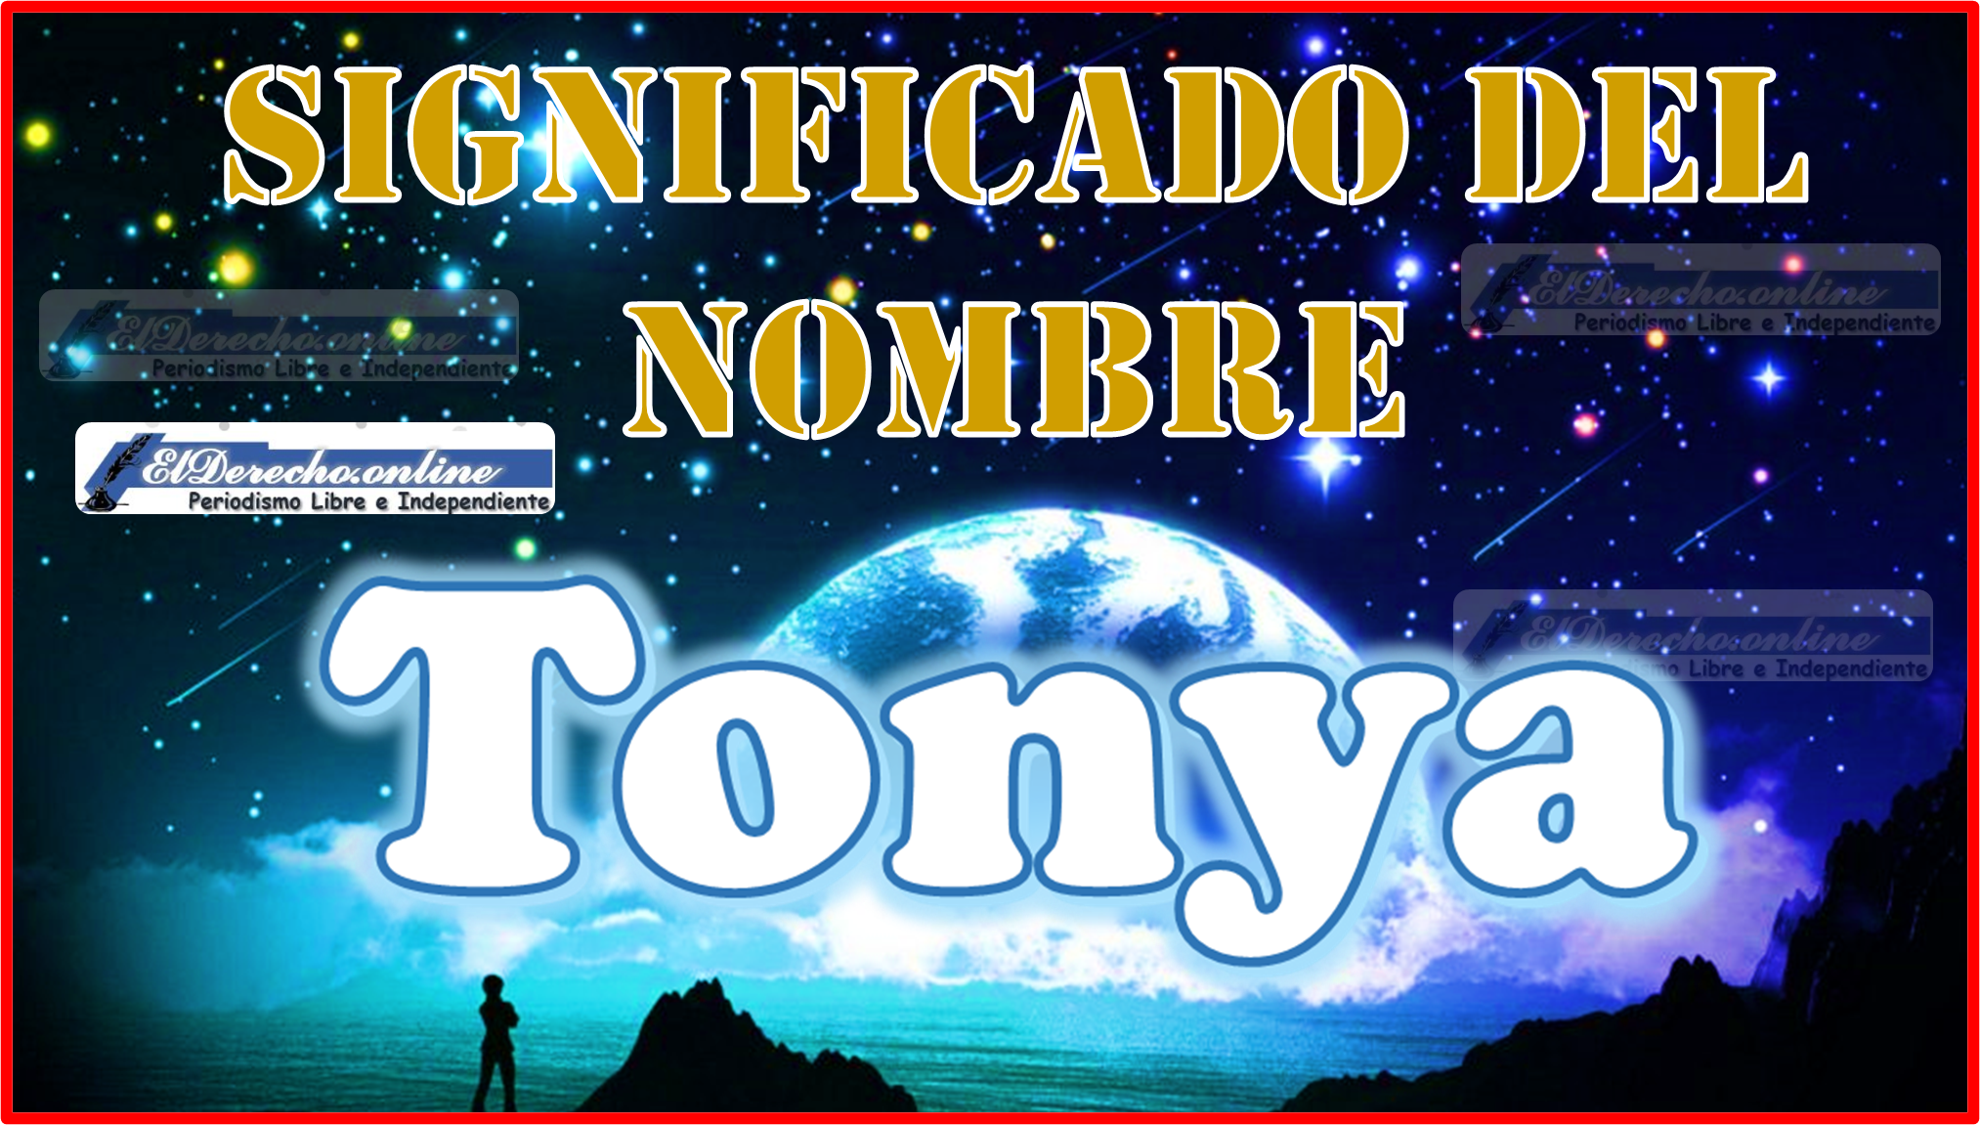 Significado del nombre Tonya, su origen y más